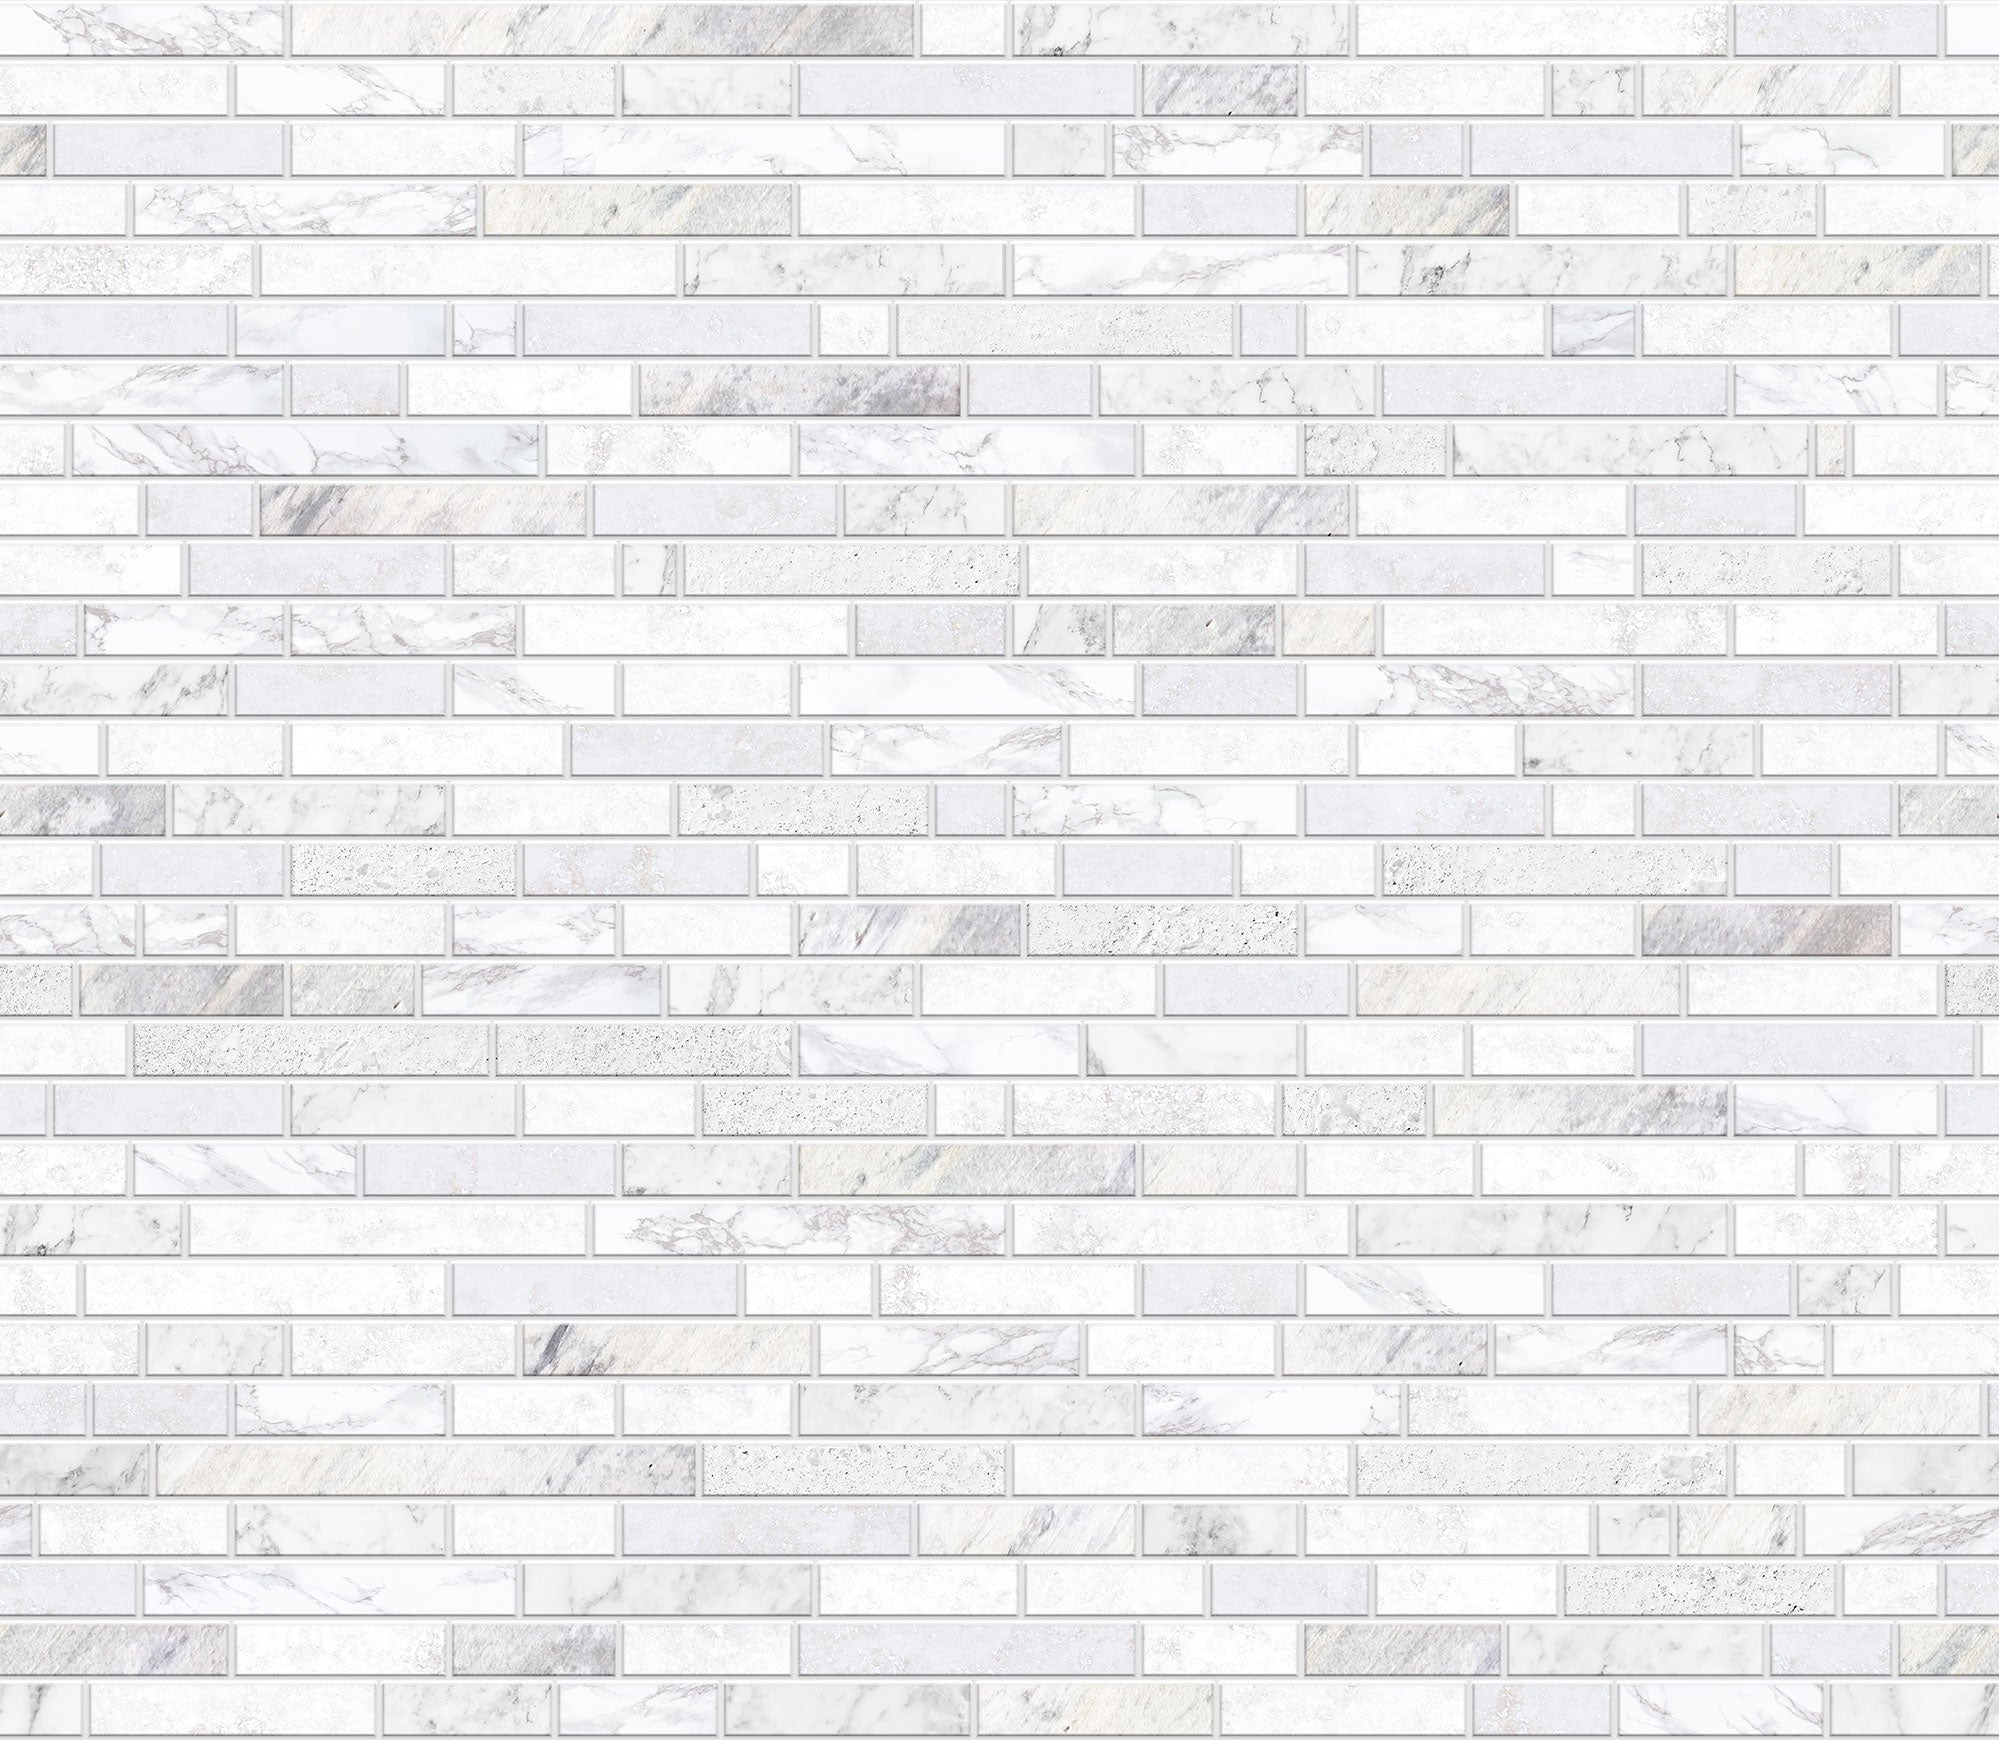 Backsplash - Marble tile design